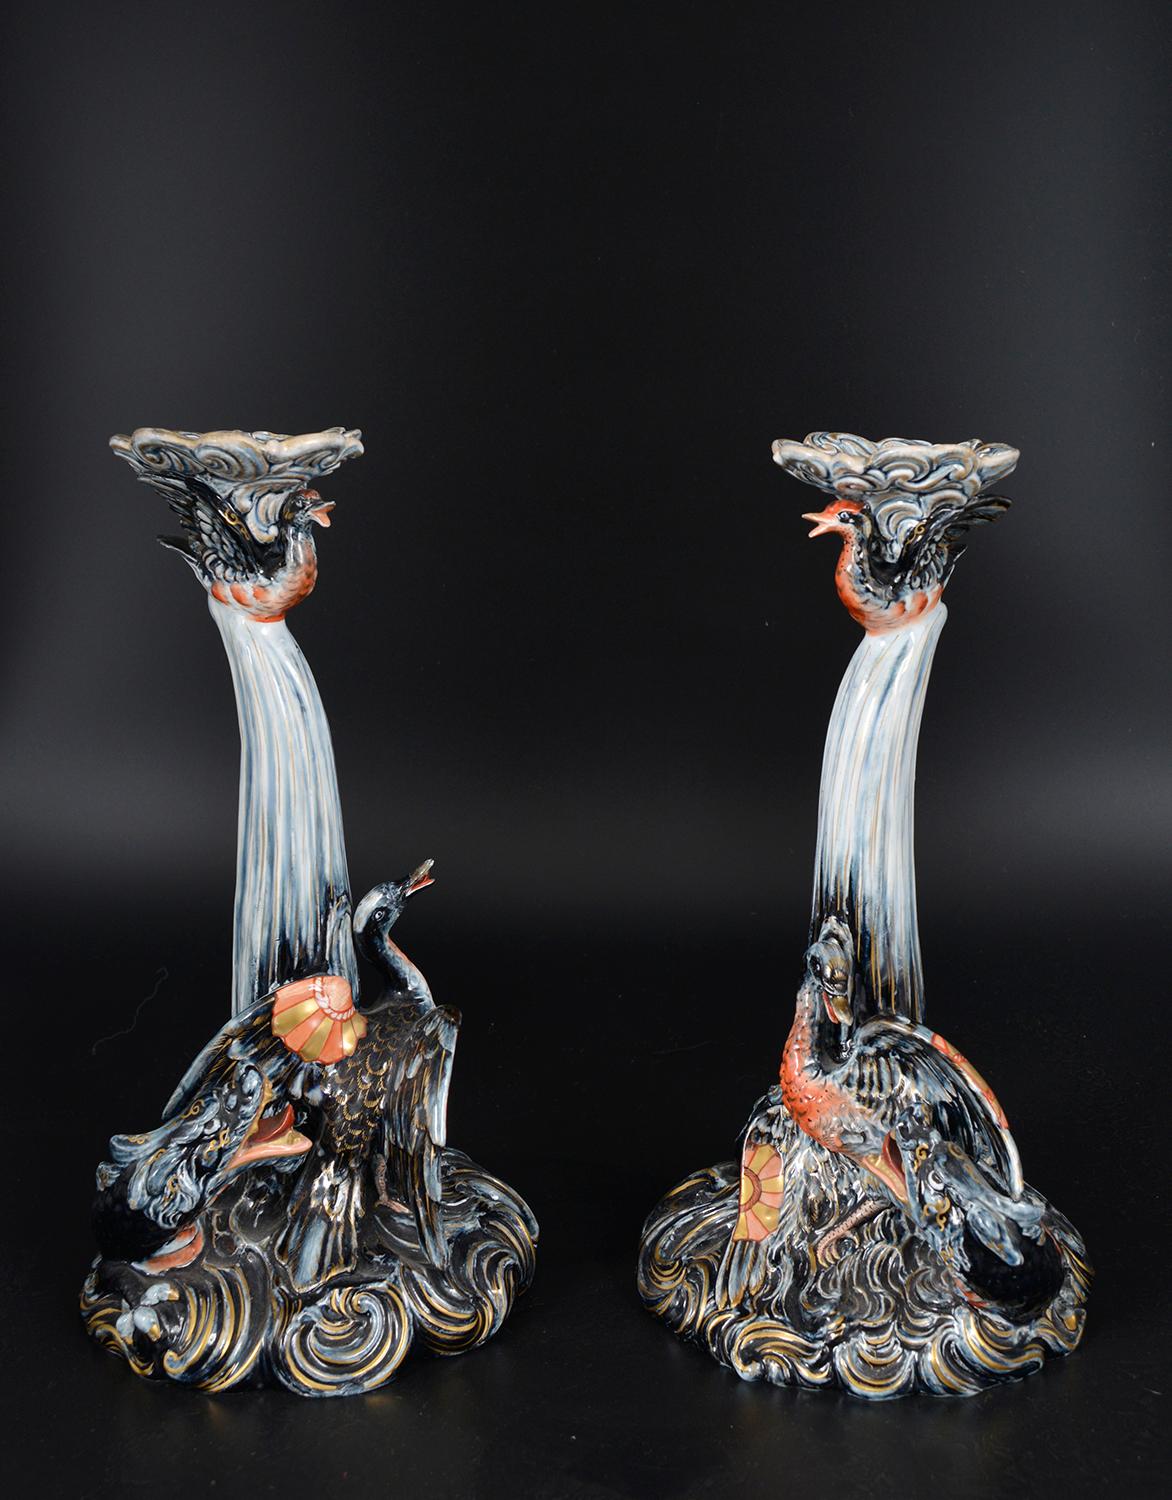 Une paire de chandeliers en céramique émaillée très décoratifs de Keller & Guérin - les bases en forme de dragon de mer poursuivant un oiseau. Signature japonaise de Keller et Guerin monogrammée sur les deux bases. 
La manufacture de Lunéville à